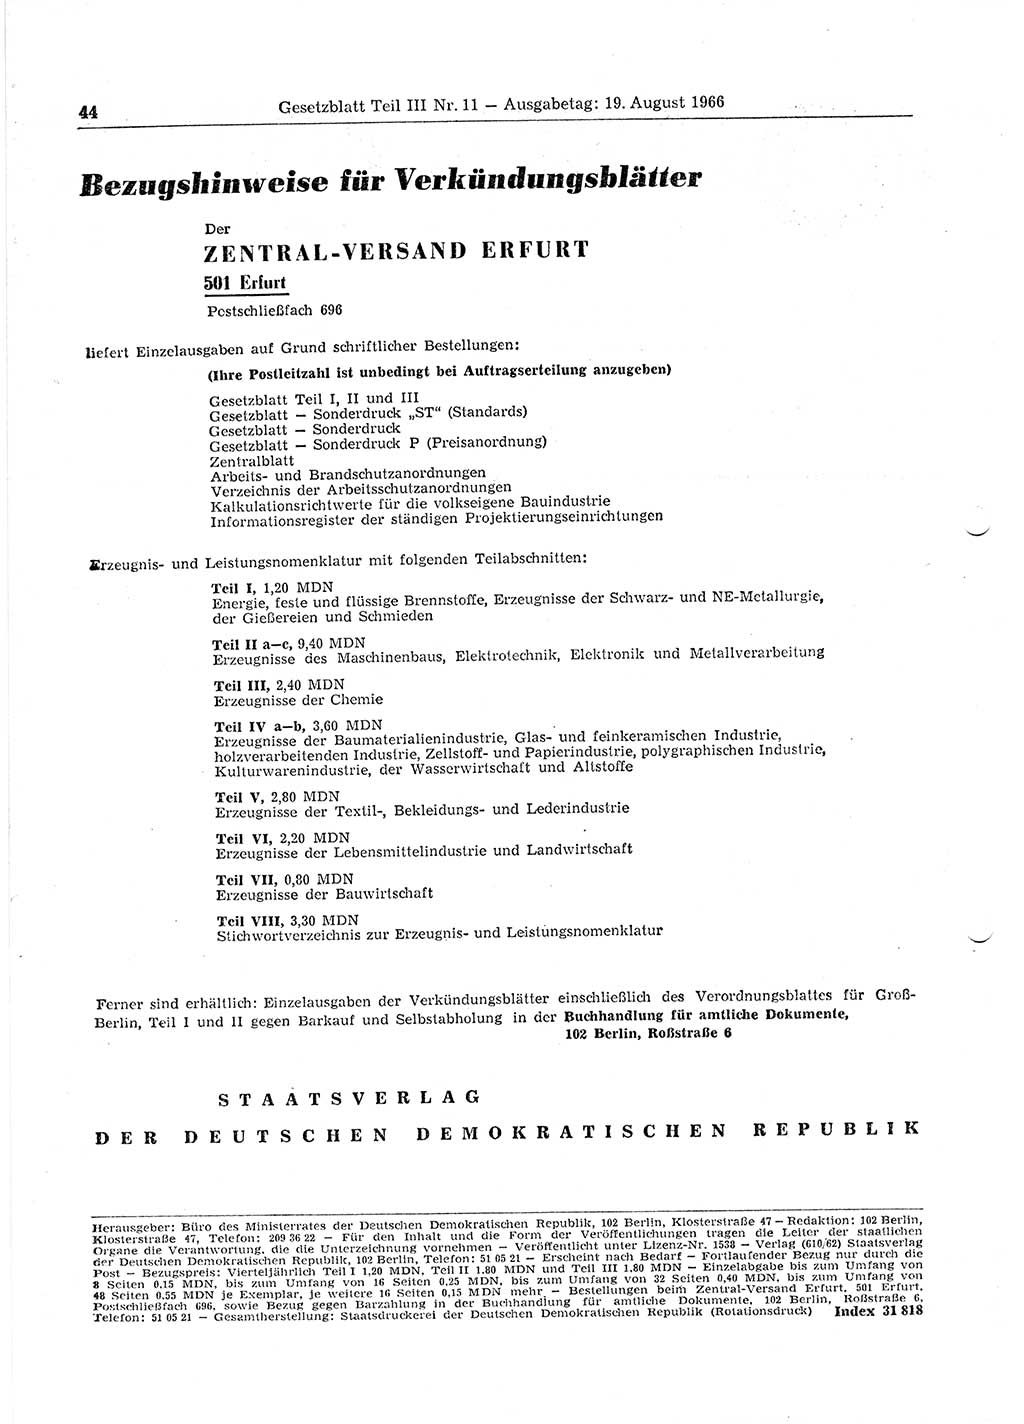 Gesetzblatt (GBl.) der Deutschen Demokratischen Republik (DDR) Teil ⅠⅠⅠ 1966, Seite 44 (GBl. DDR ⅠⅠⅠ 1966, S. 44)